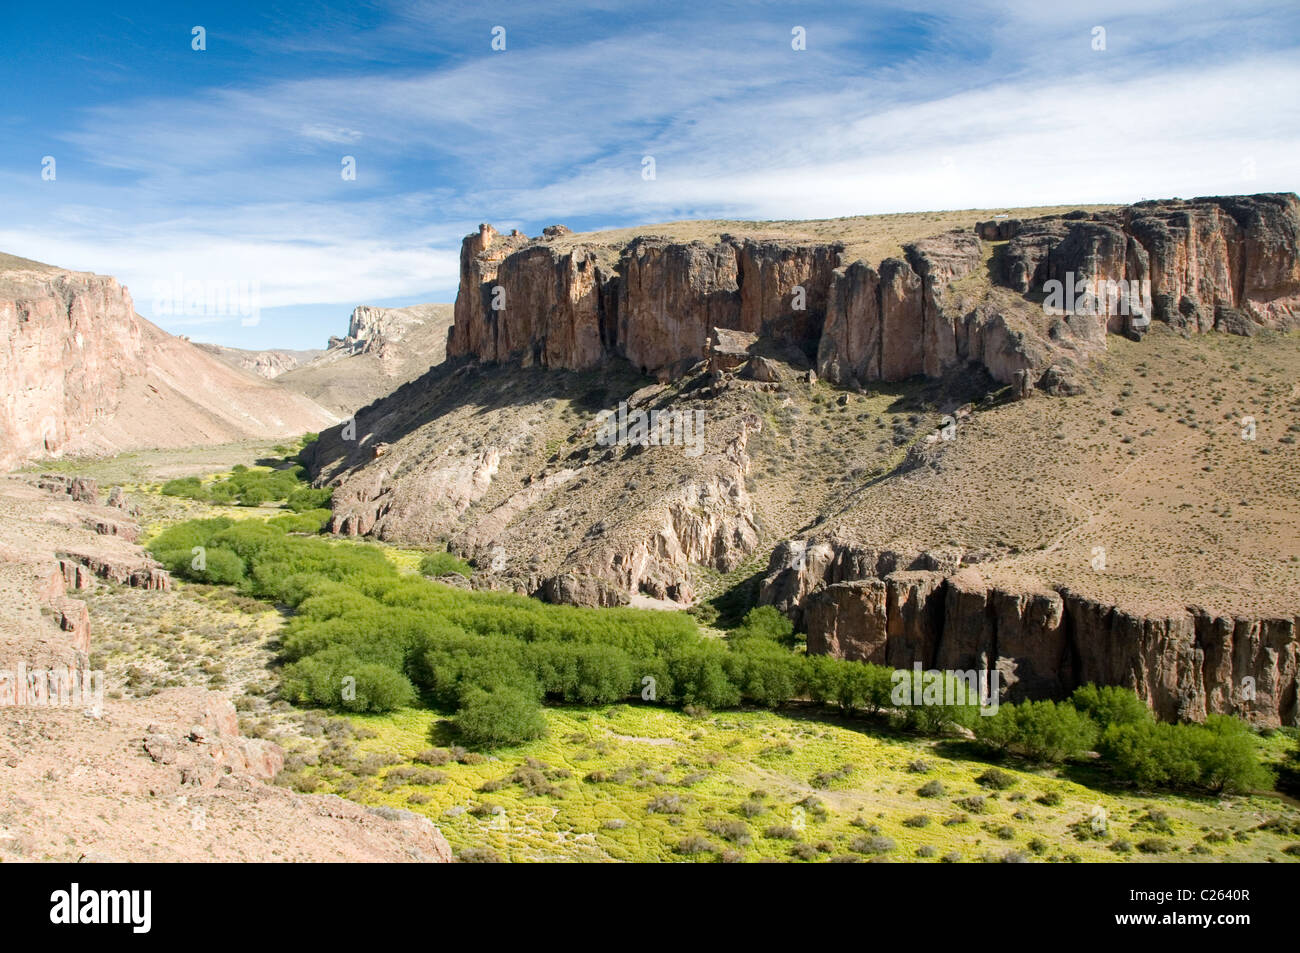 Site of the Cueva de los Manos, in the Pinturas Canyon, Perito Moreno, Santa Cruz, Patagonia, Argentina Stock Photo